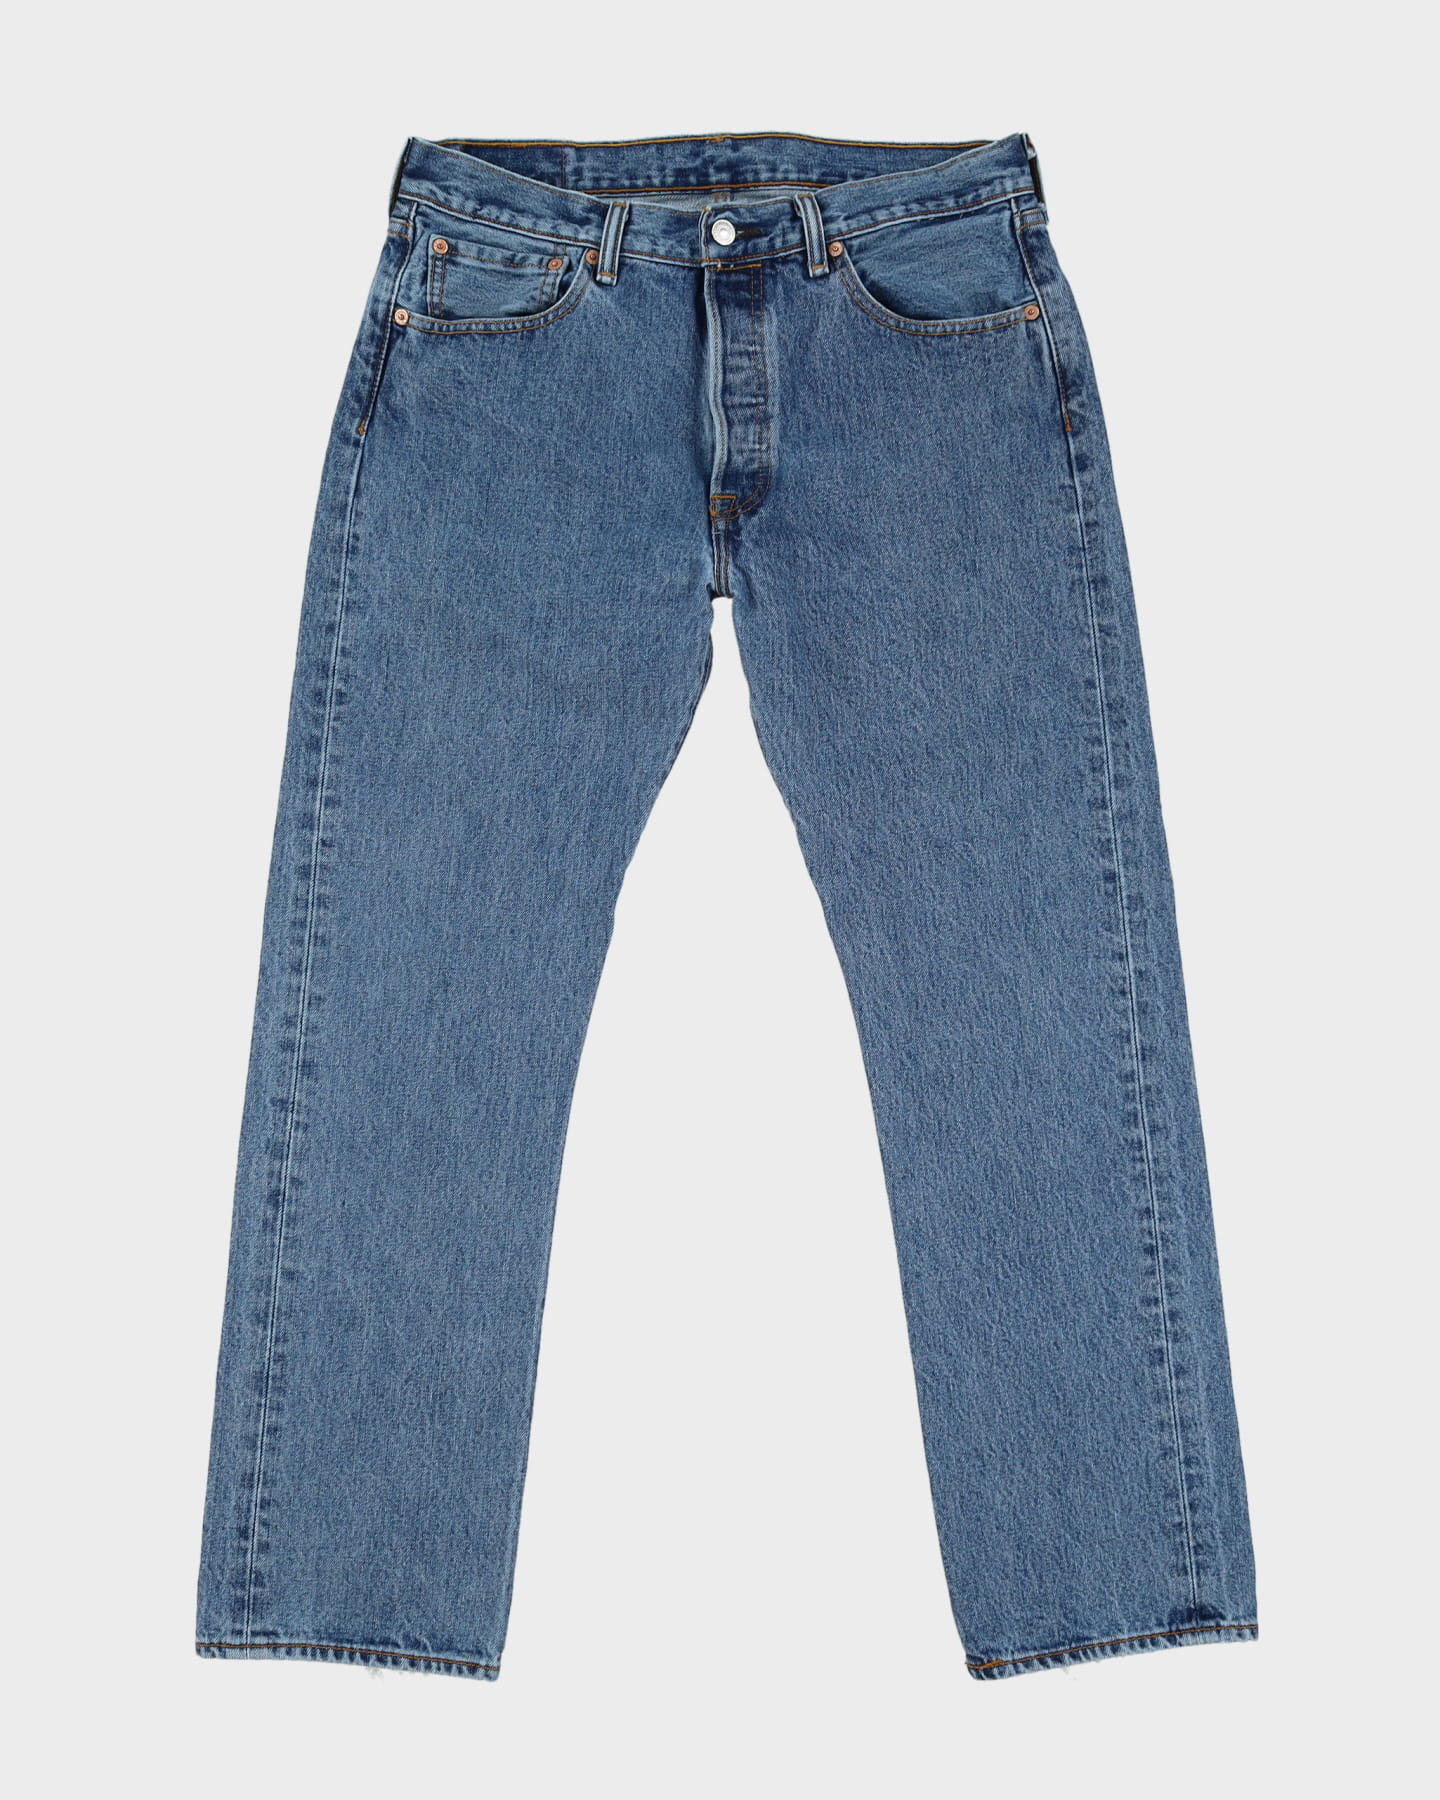 Levi's 501 Medium Wash Jeans - W33 L30